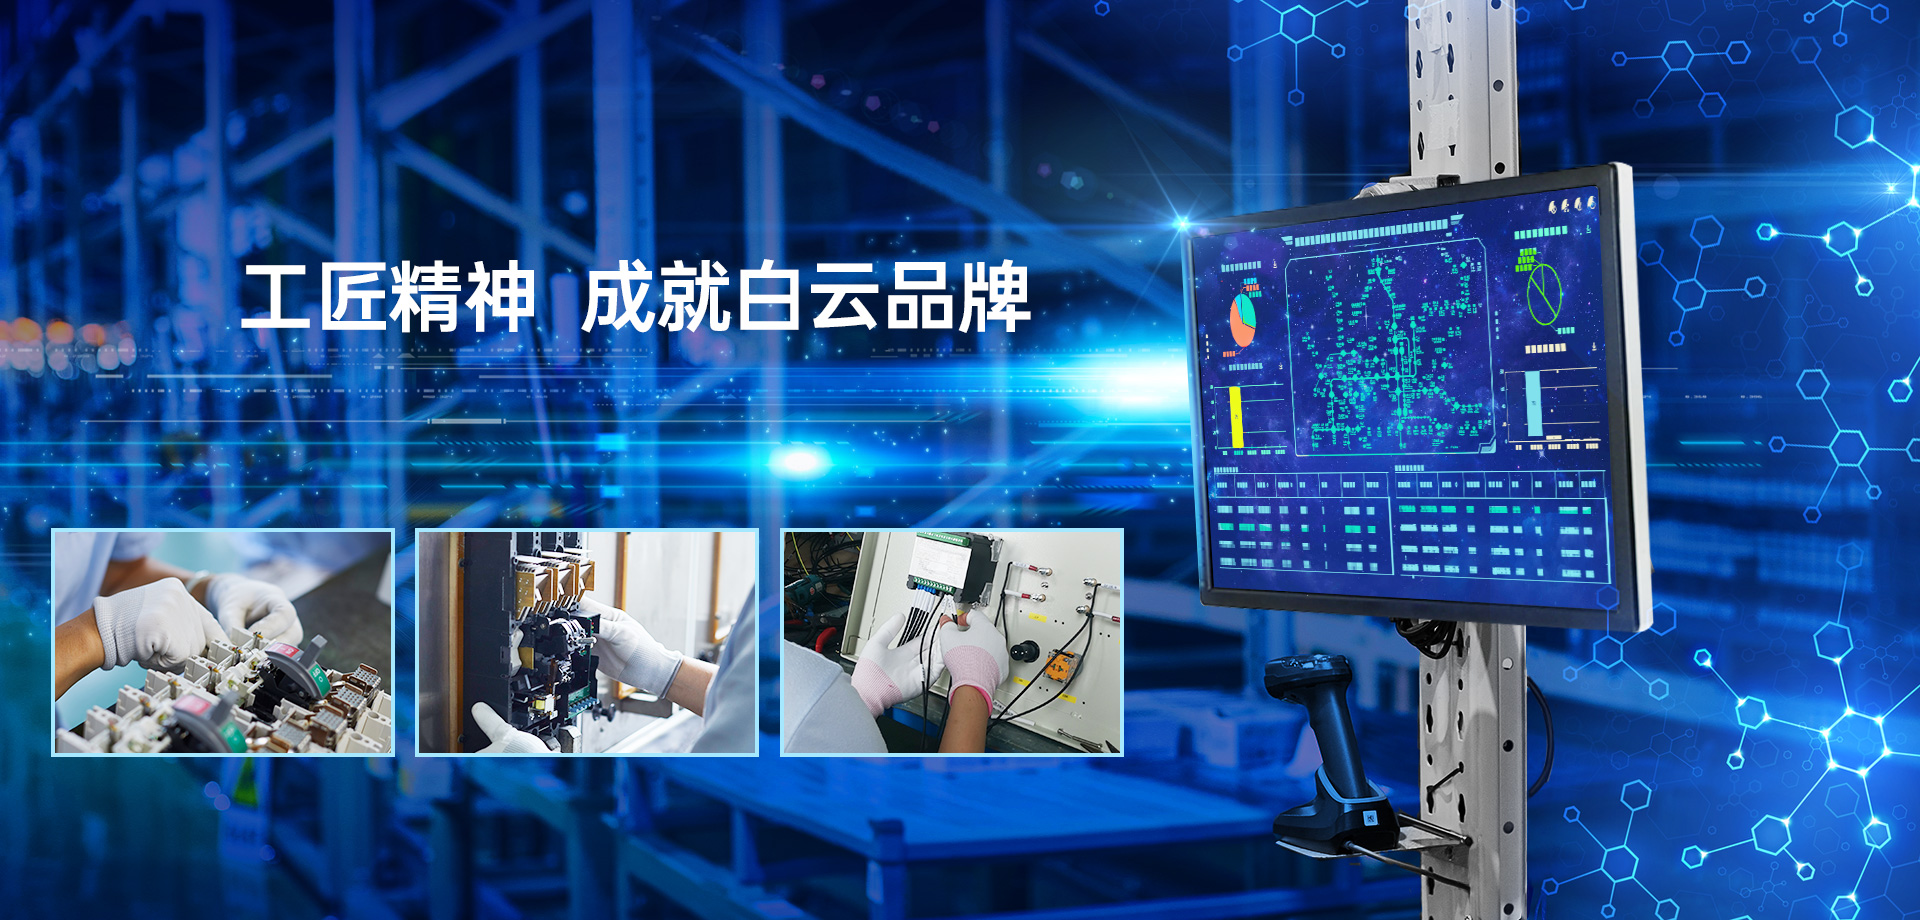 关于当前产品6600cc6公海彩船官网·(中国)官方网站的成功案例等相关图片